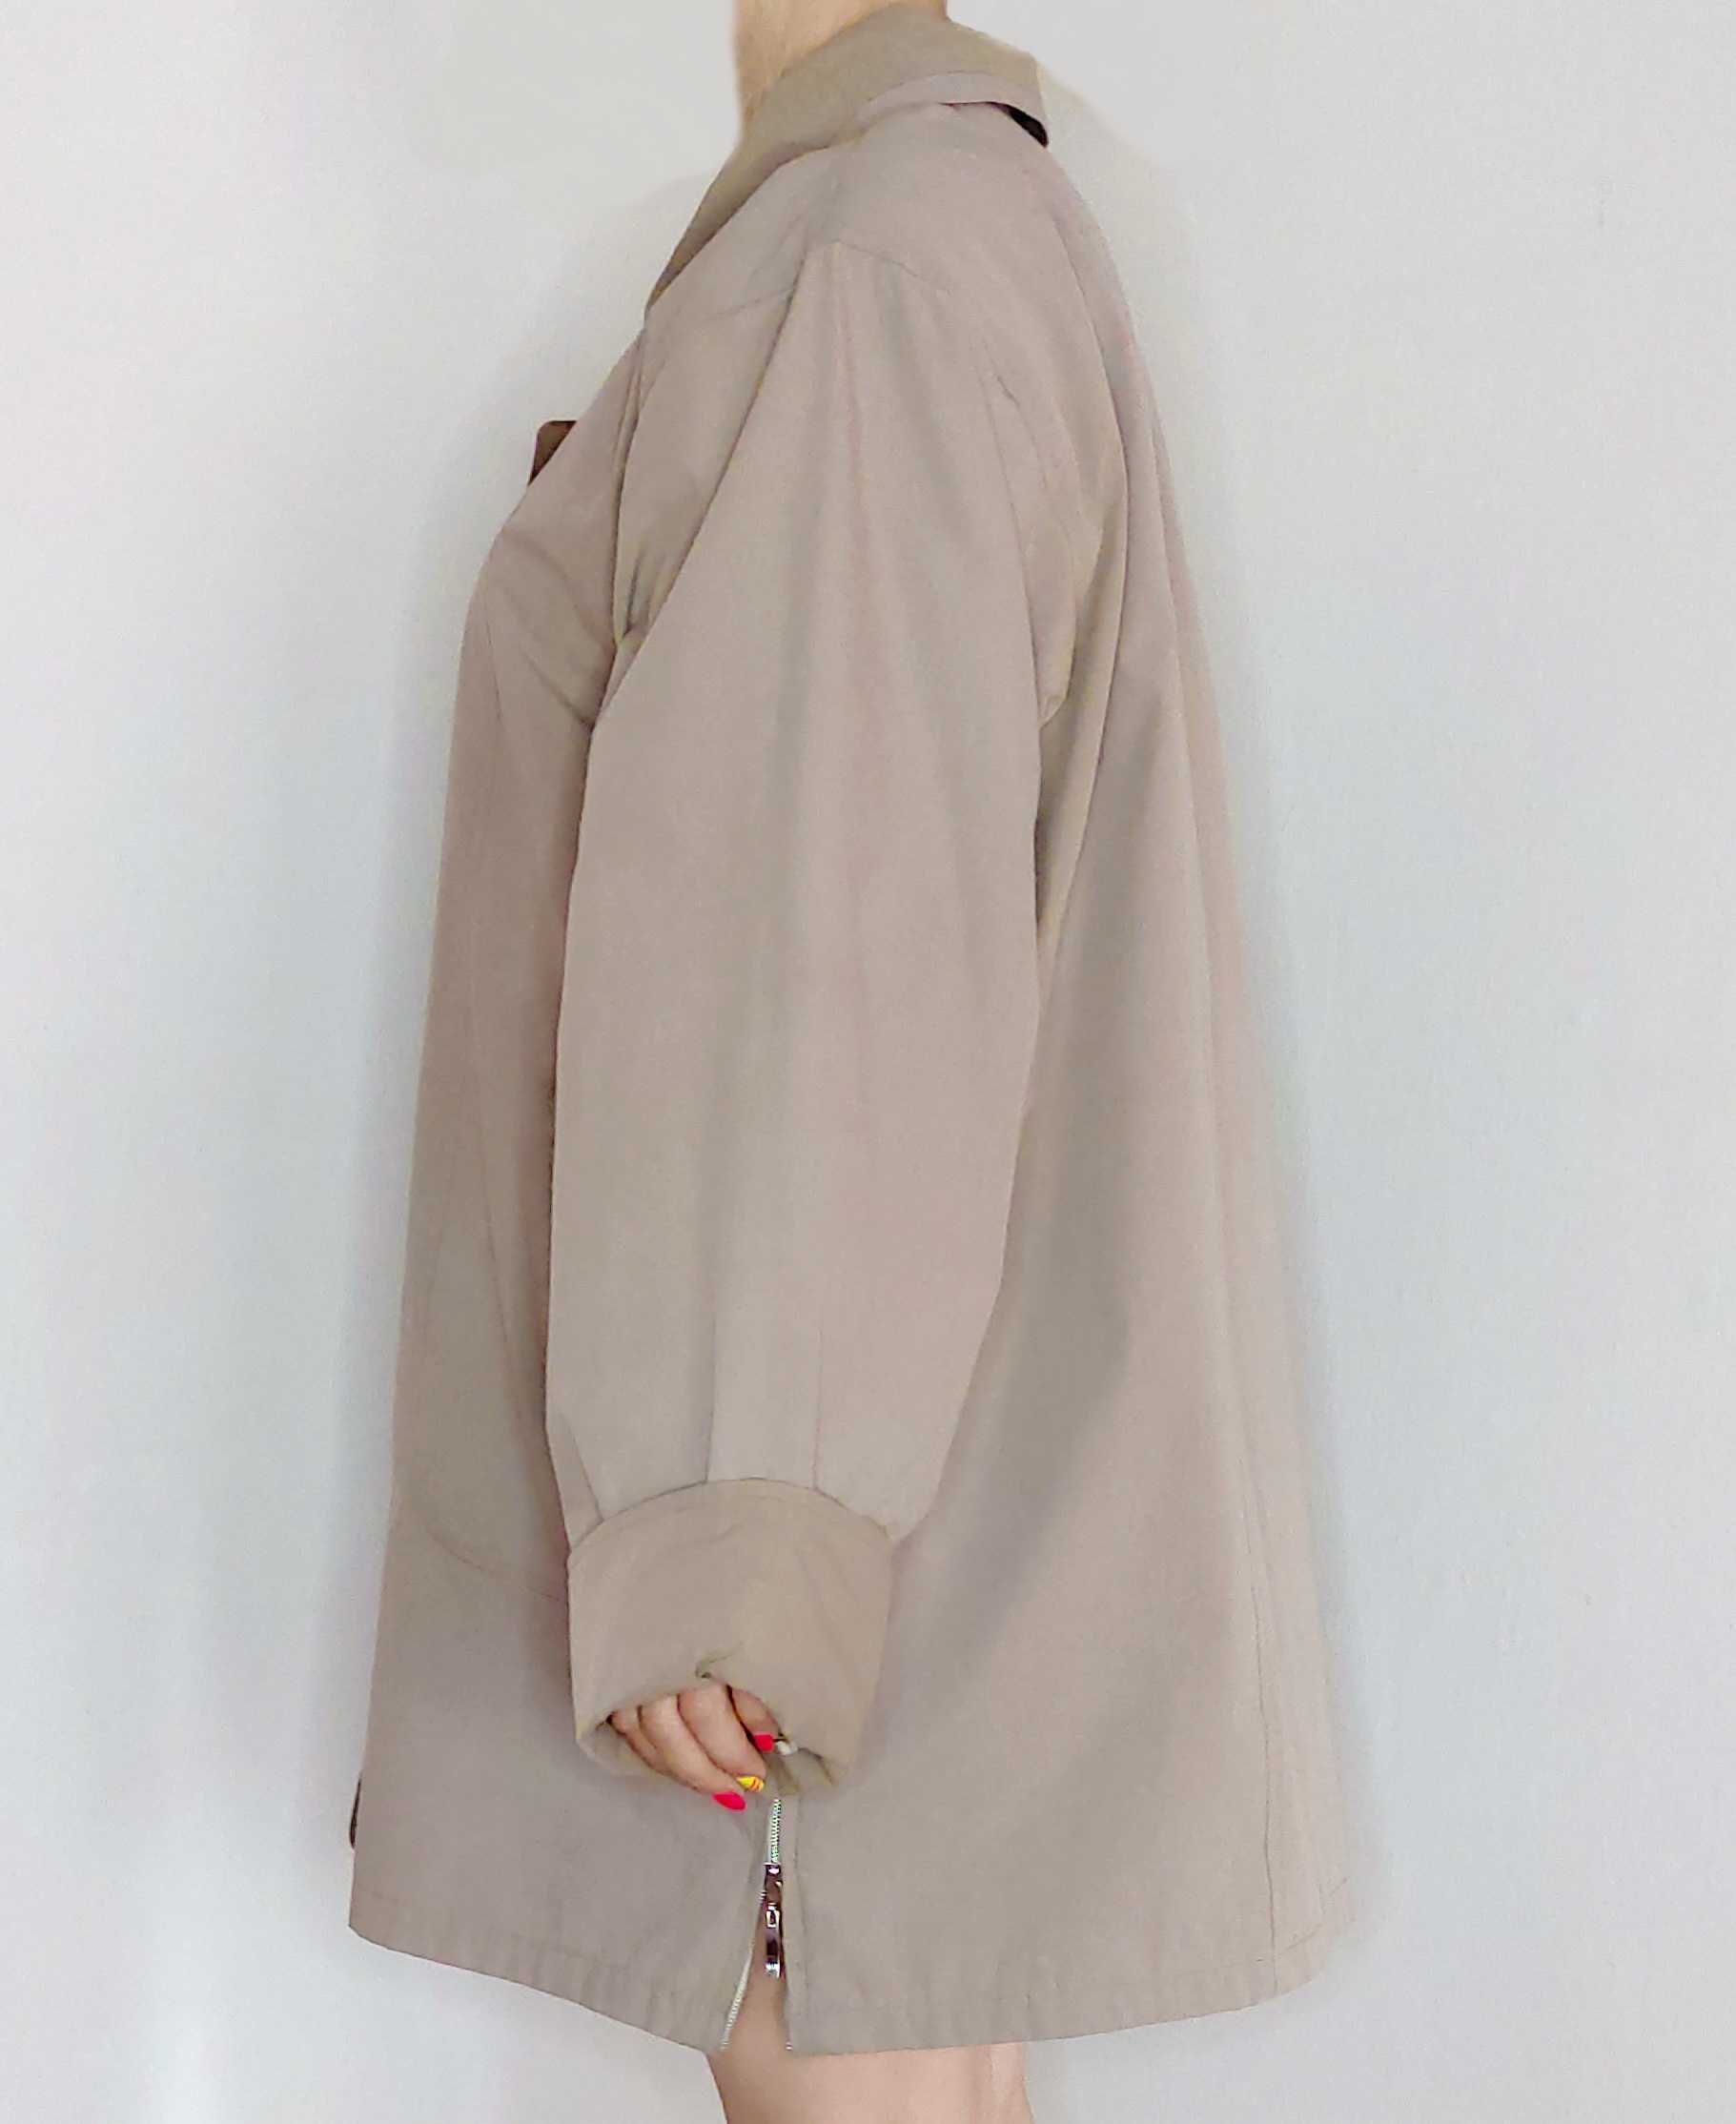 Куртка женская, с капюшоном, осень, р. 48-50